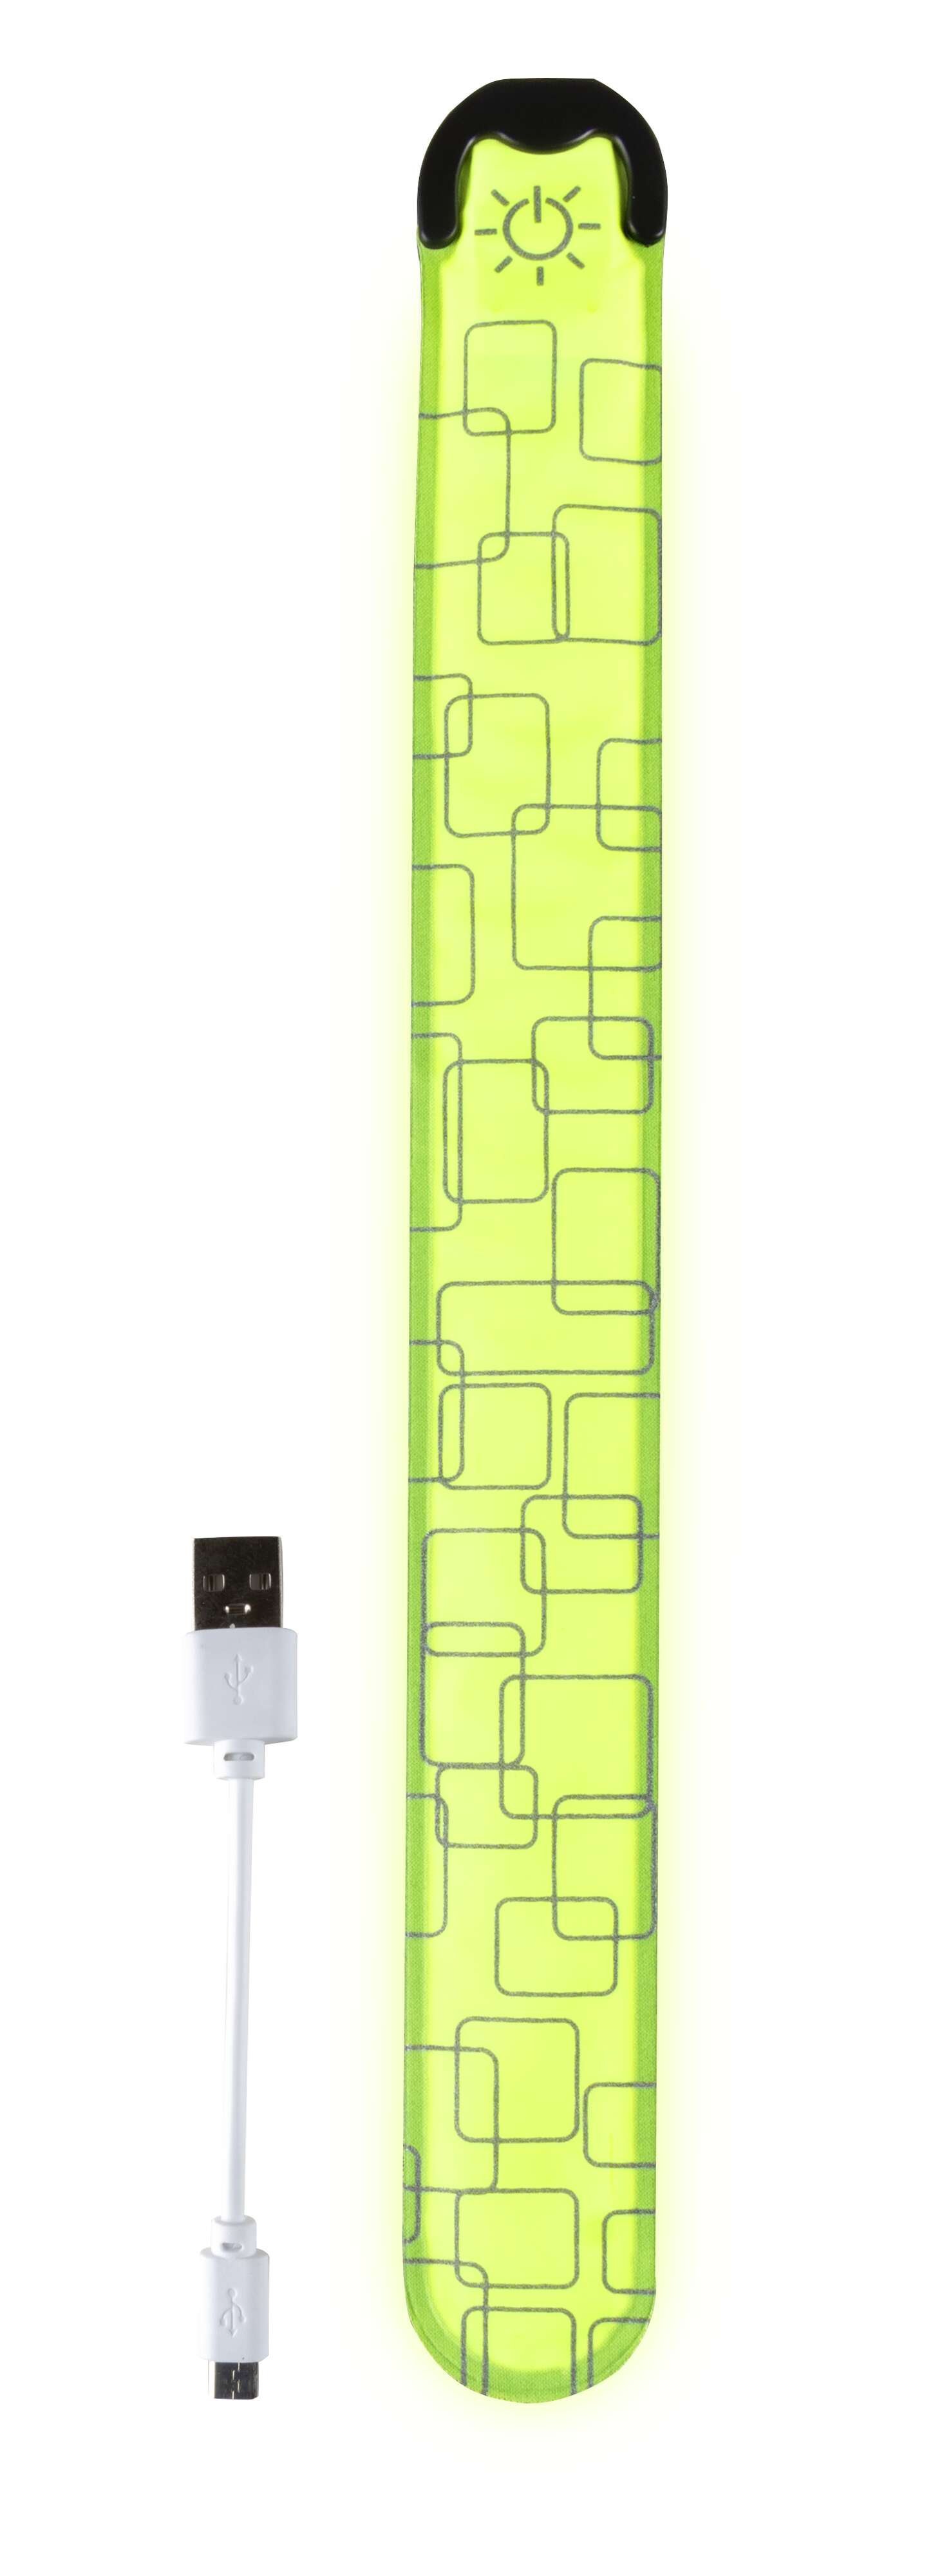 Benda LED, benda luminosa con opzione di ricarica USB 36x3,5 cm giallo